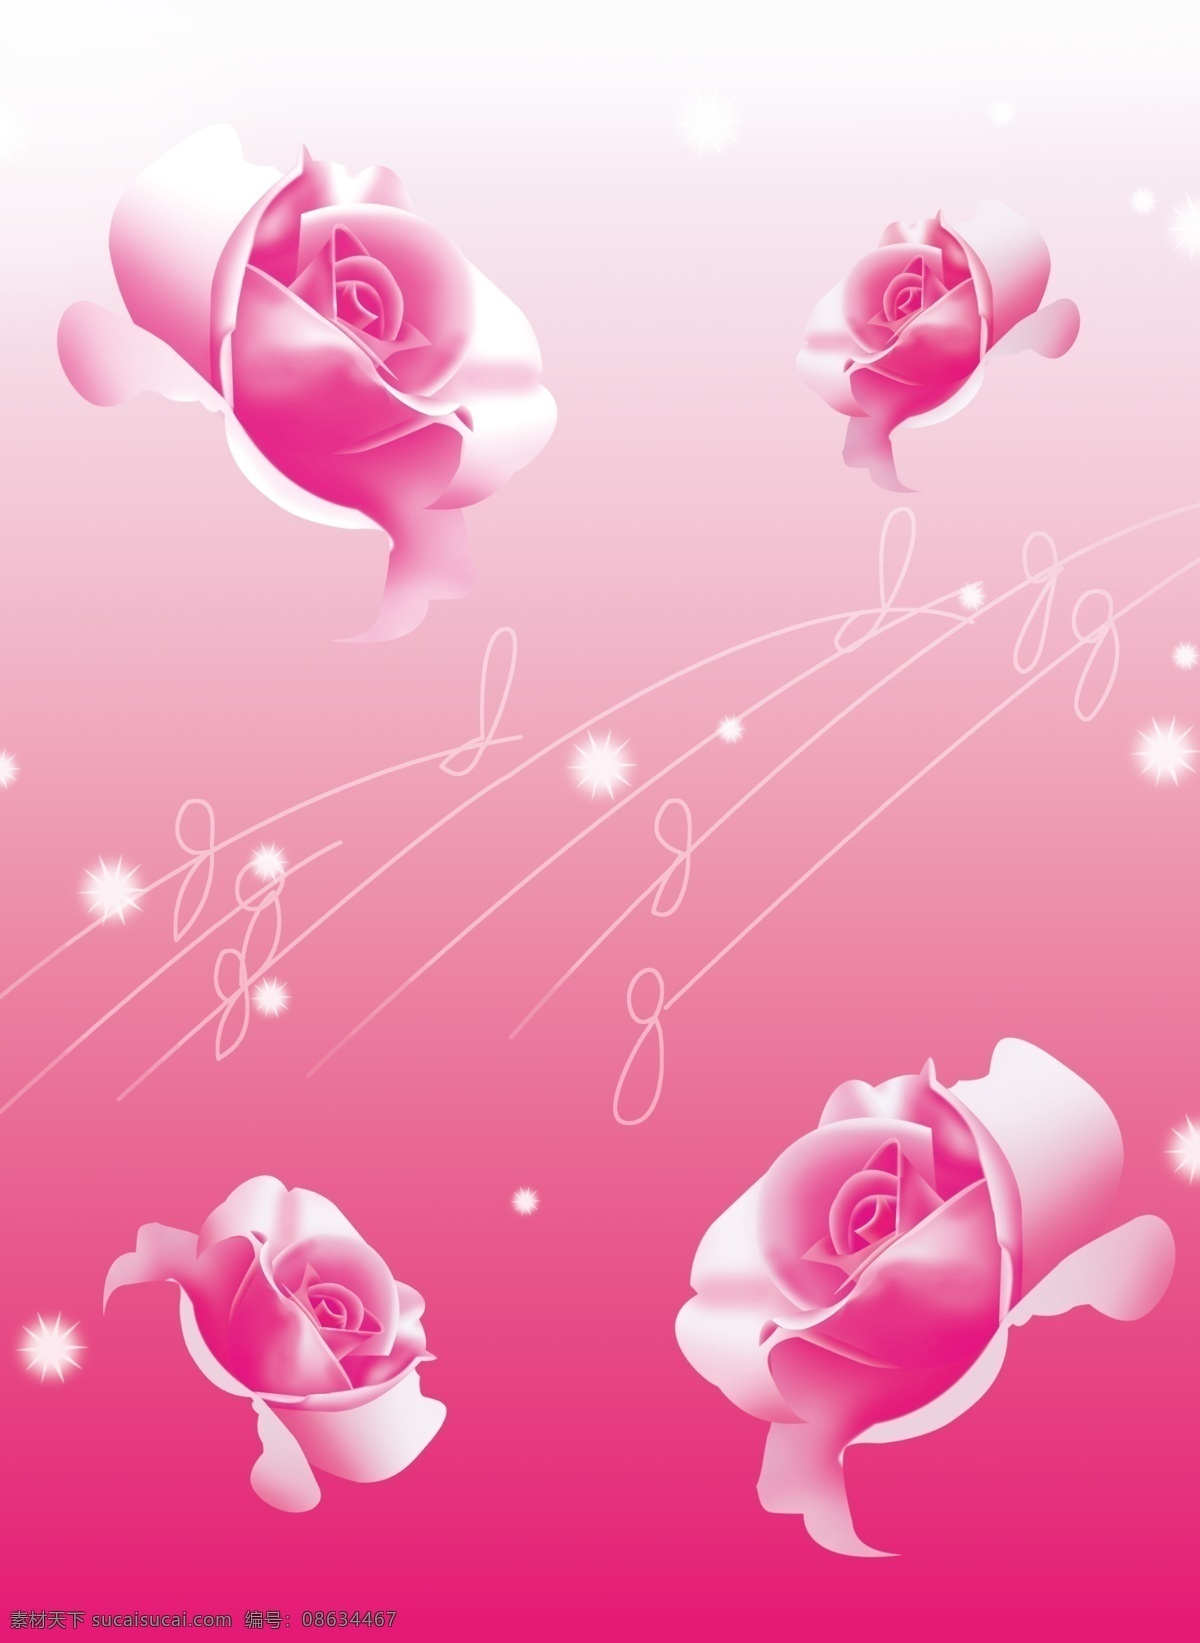 移门免费下载 粉色 广告设计模板 玫瑰 线条 星星 移门 移门图案 源文件 玫瑰素材下载 玫瑰模板下载 psd源文件